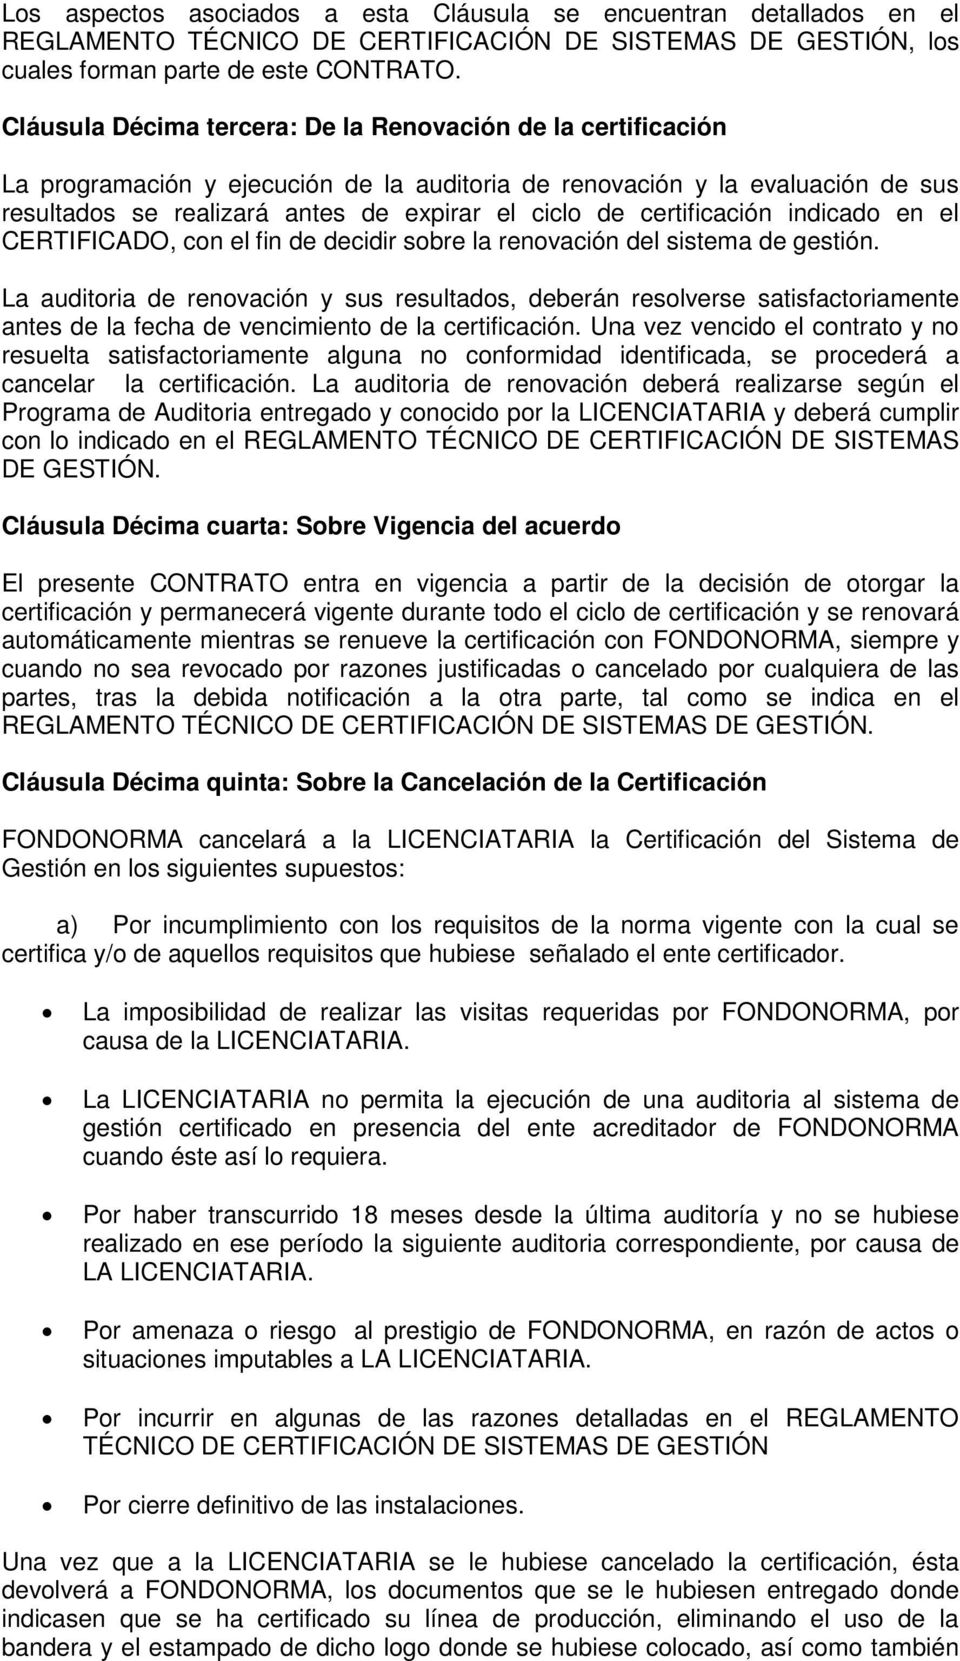 certificación indicado en el CERTIFICADO, con el fin de decidir sobre la renovación del sistema de gestión.